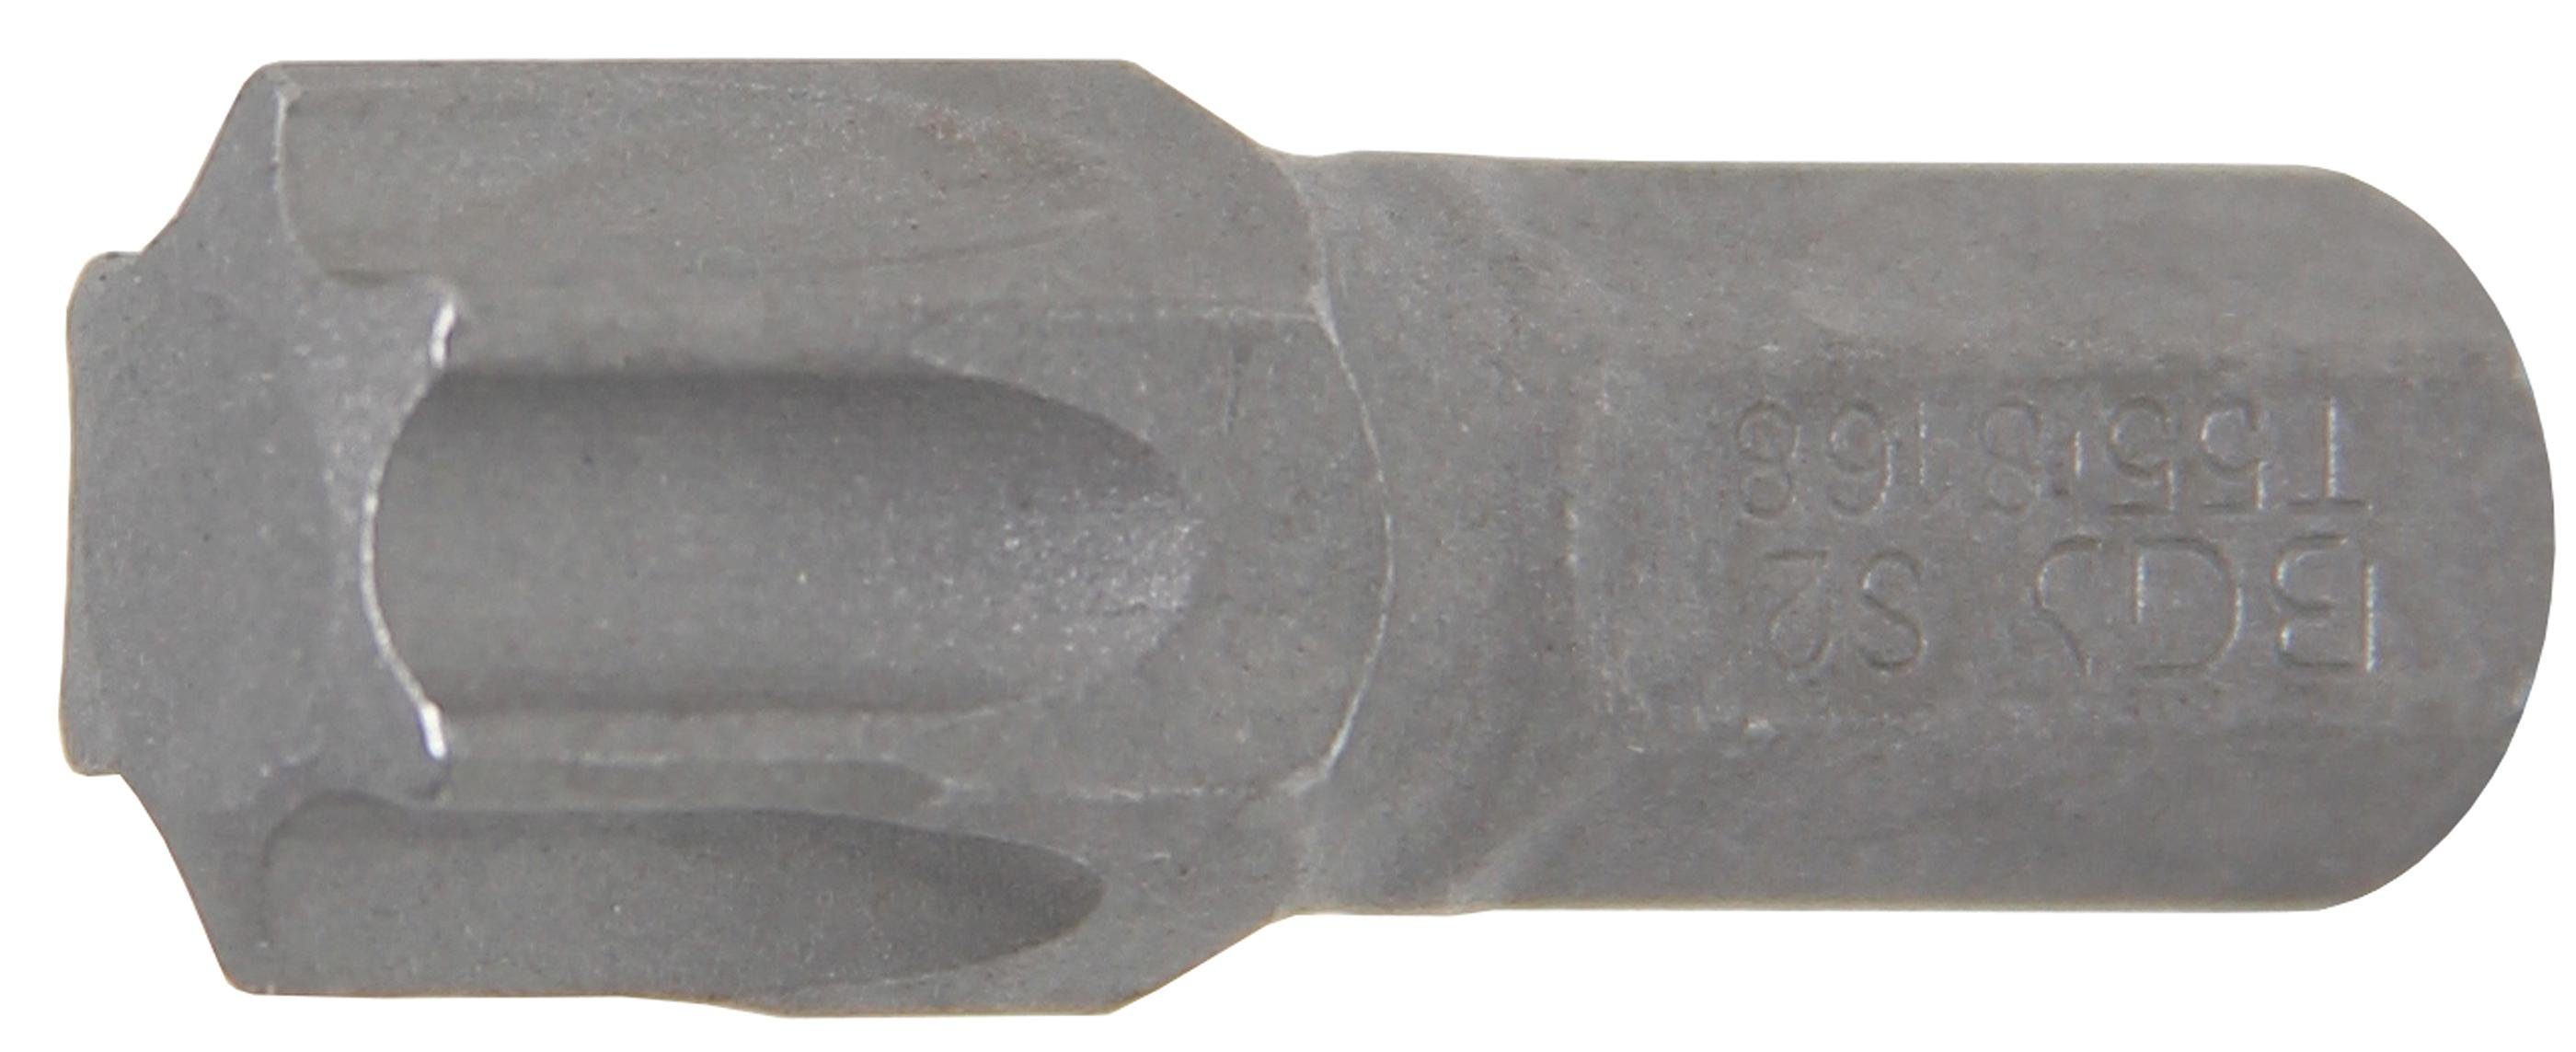 BGS technic Bit-Schraubendreher Bit, Antrieb Außensechskant 8 mm (5/16), T-Profil (für Torx) T55